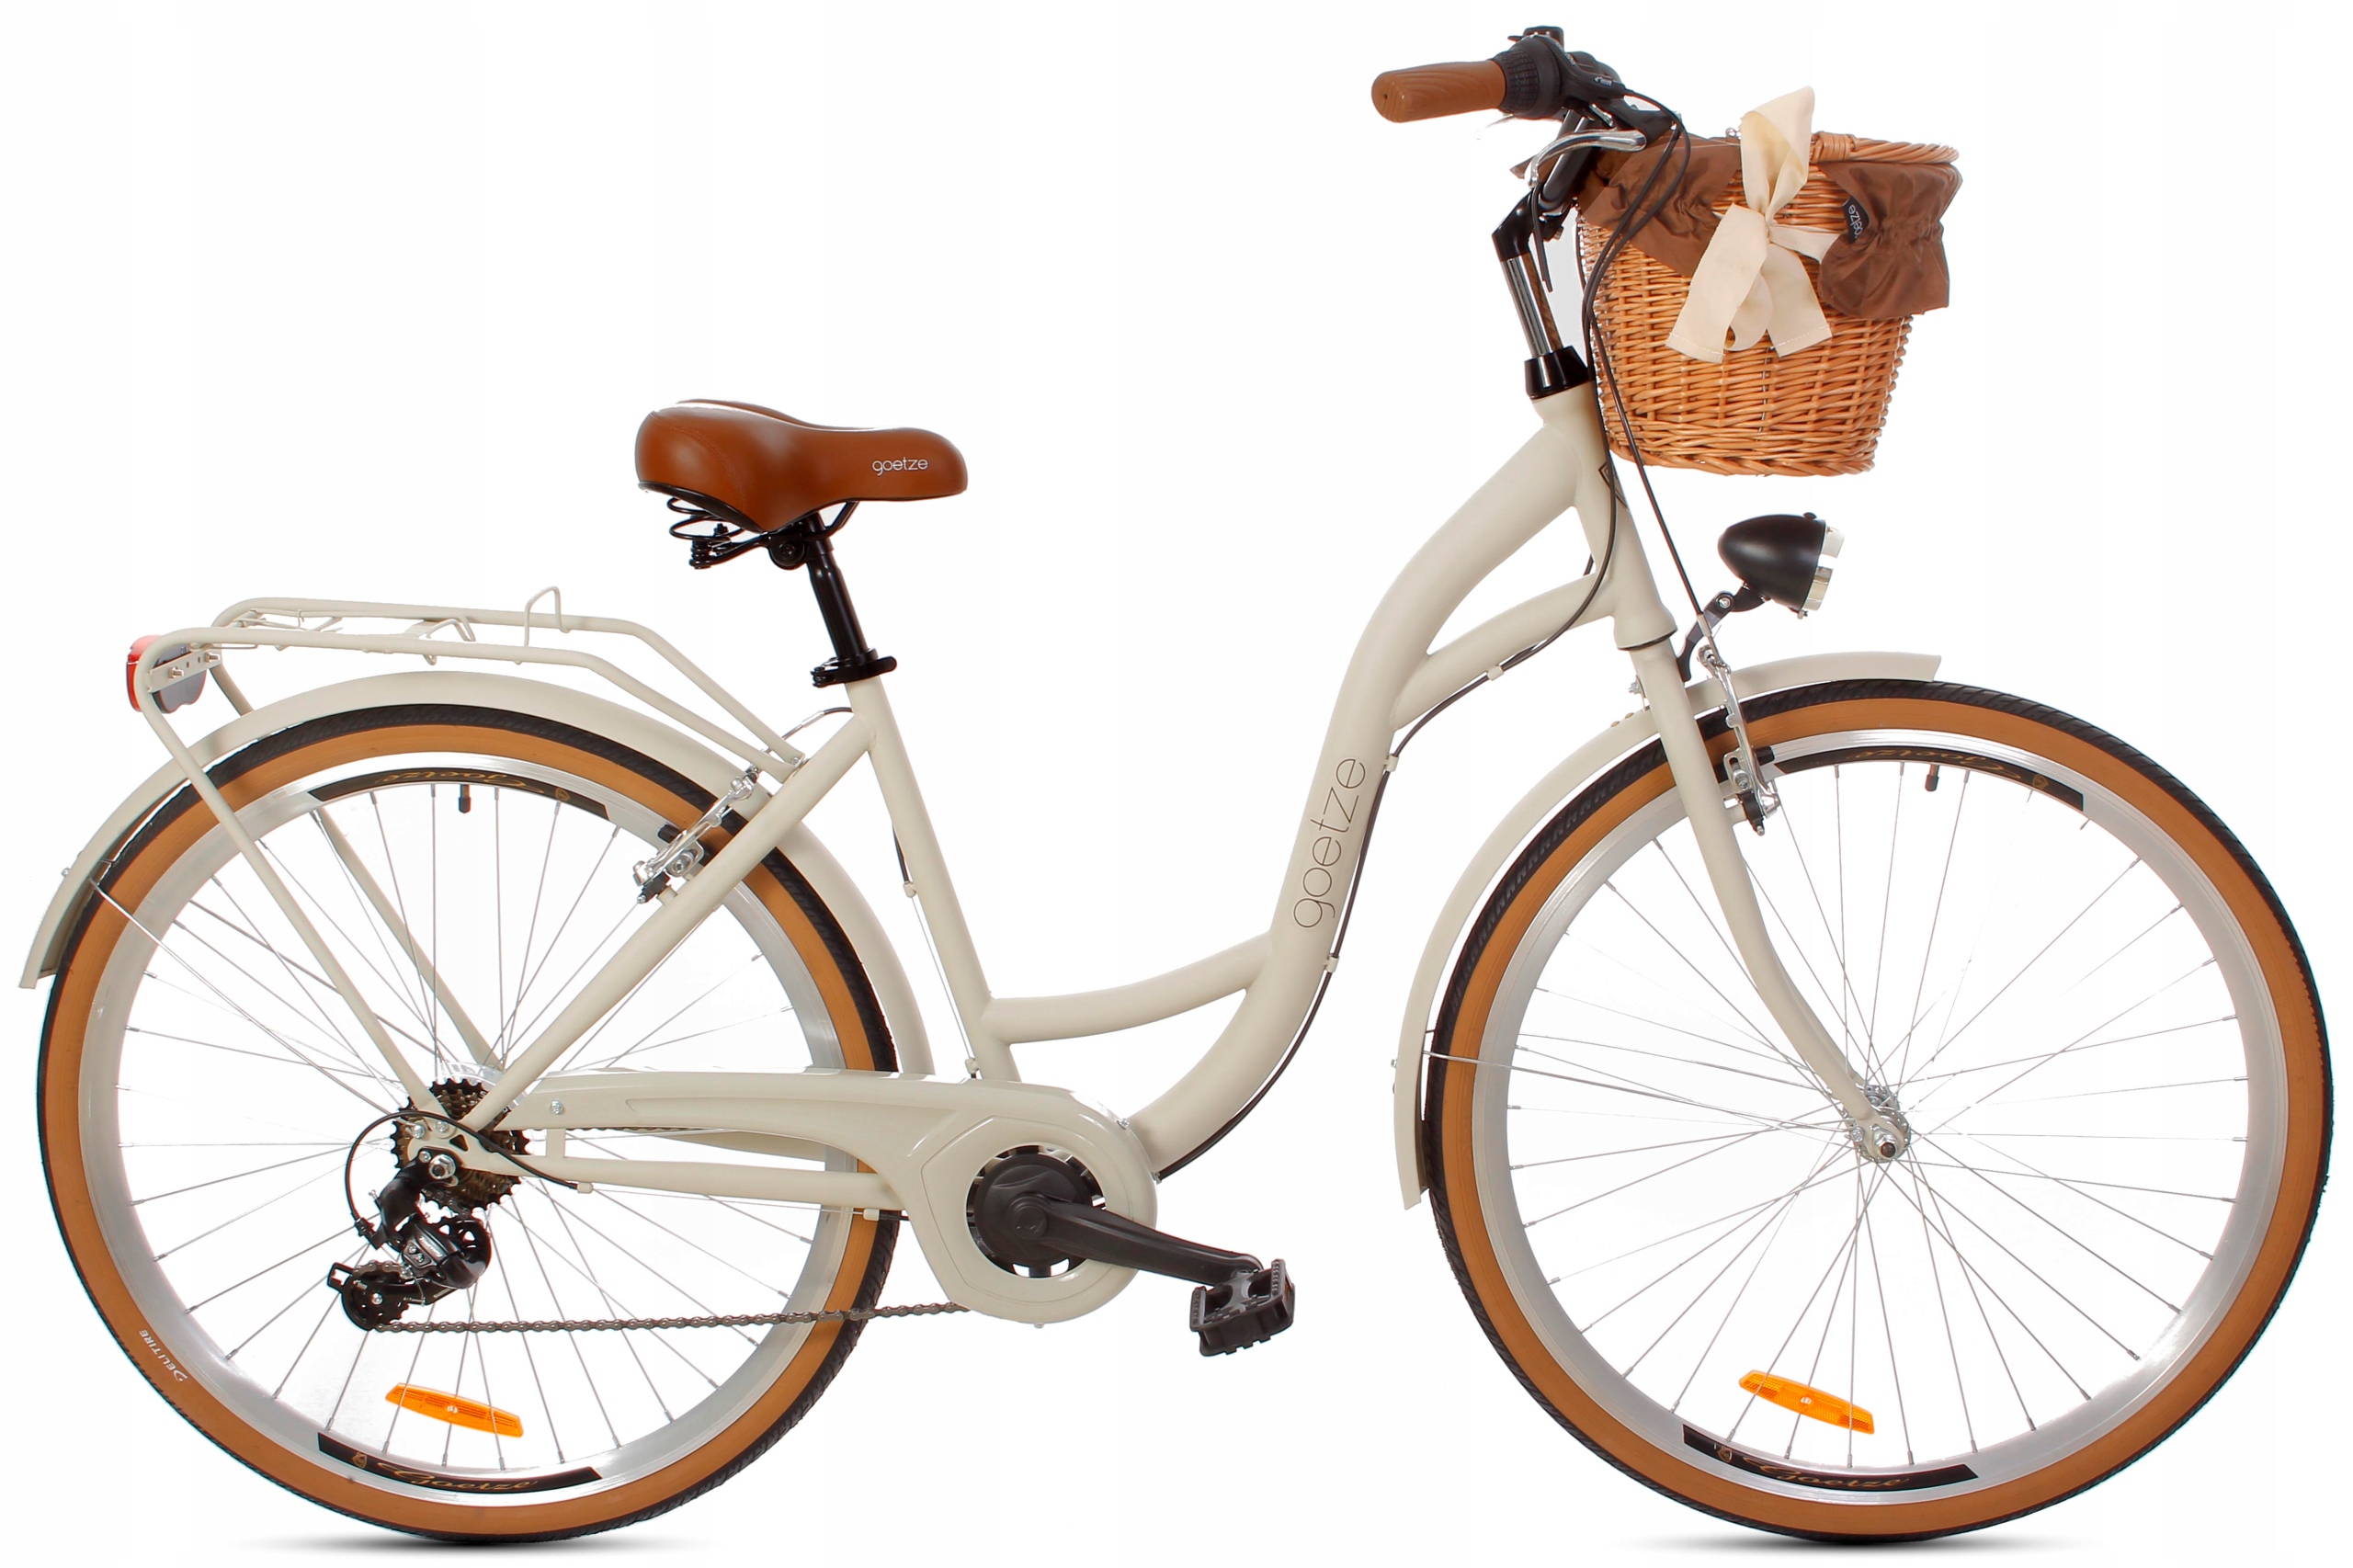 Городской велосипед GOETZE Mood 28 женская корзина Shimano Код производителя mood28st7